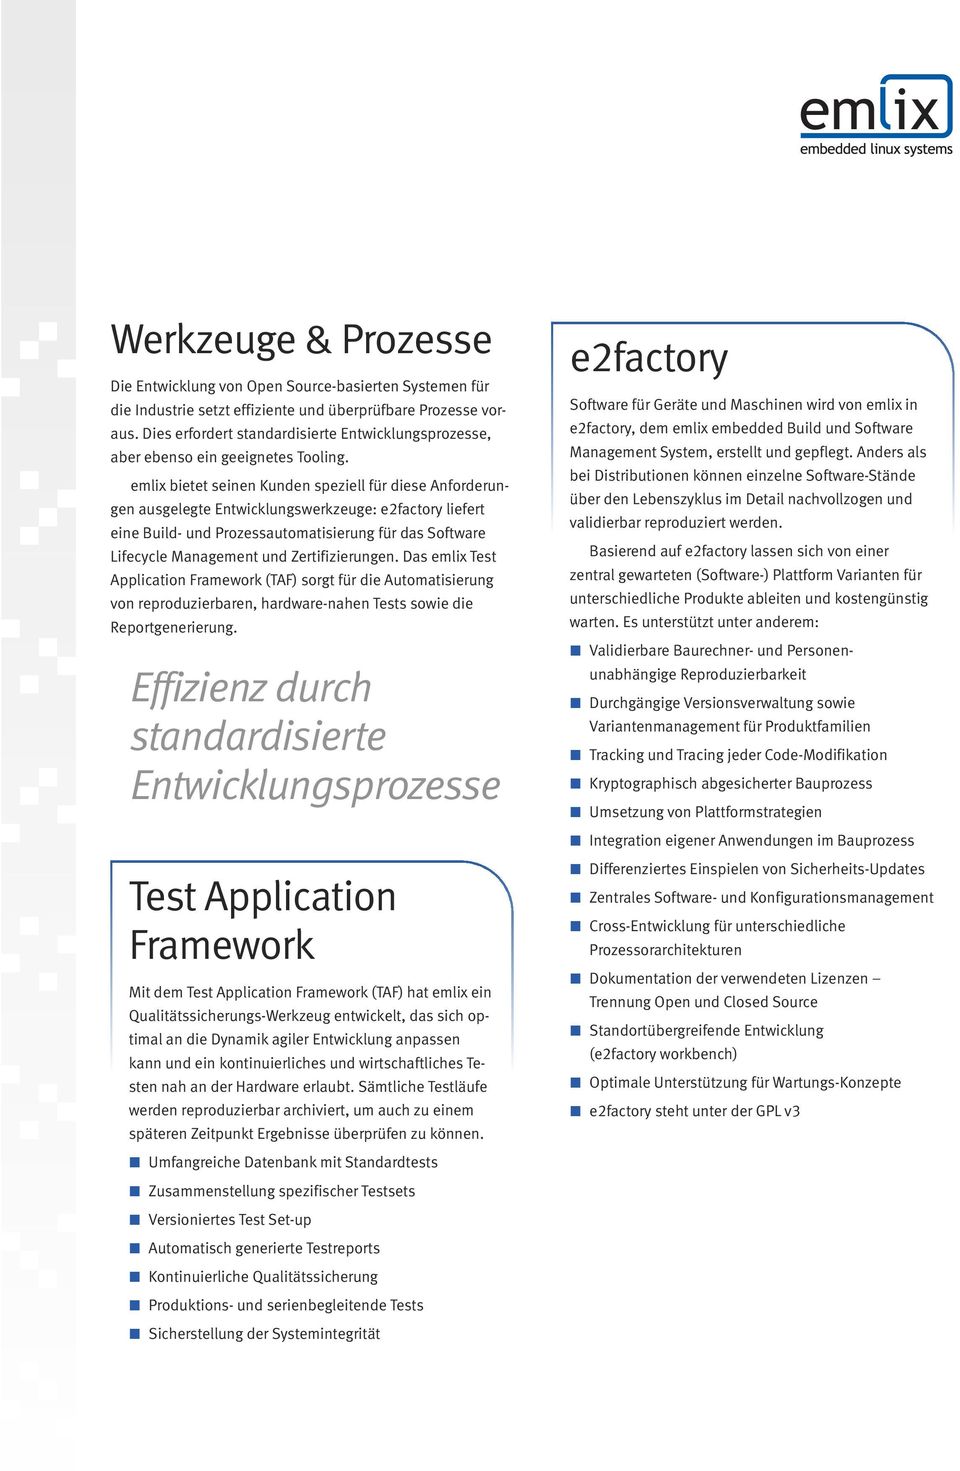 emlix bietet seinen Kunden speziell für diese Anforderungen ausgelegte Entwicklungswerkzeuge: e2factory liefert eine Build- und Prozessautomatisierung für das Software Lifecycle Management und